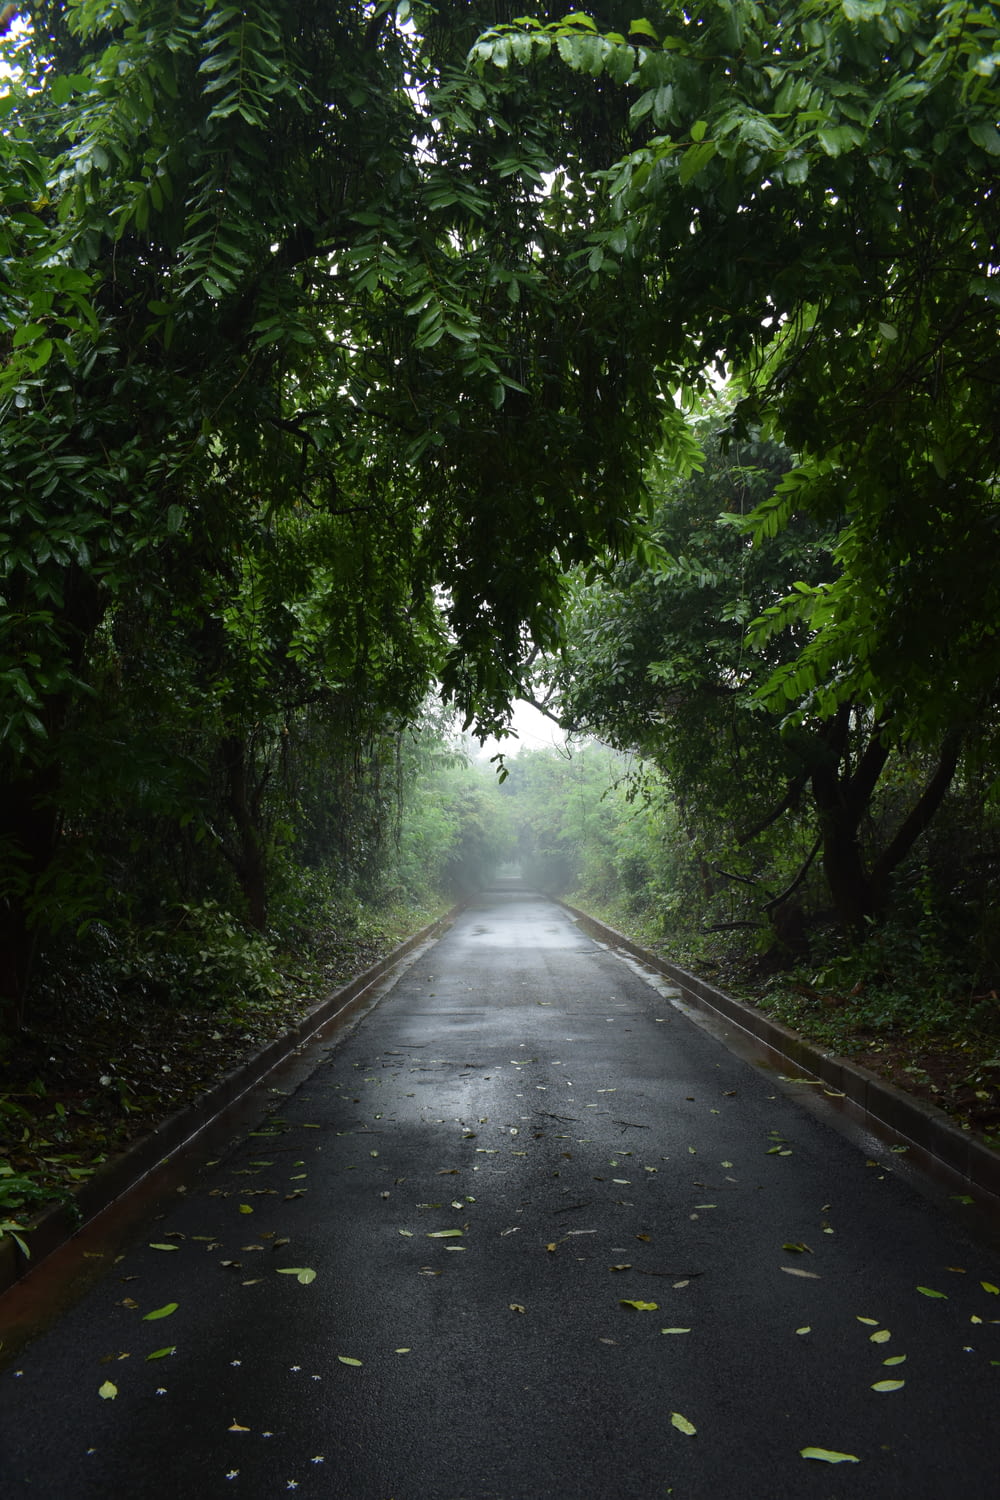 Une route vide entourée d’arbres verdoyants